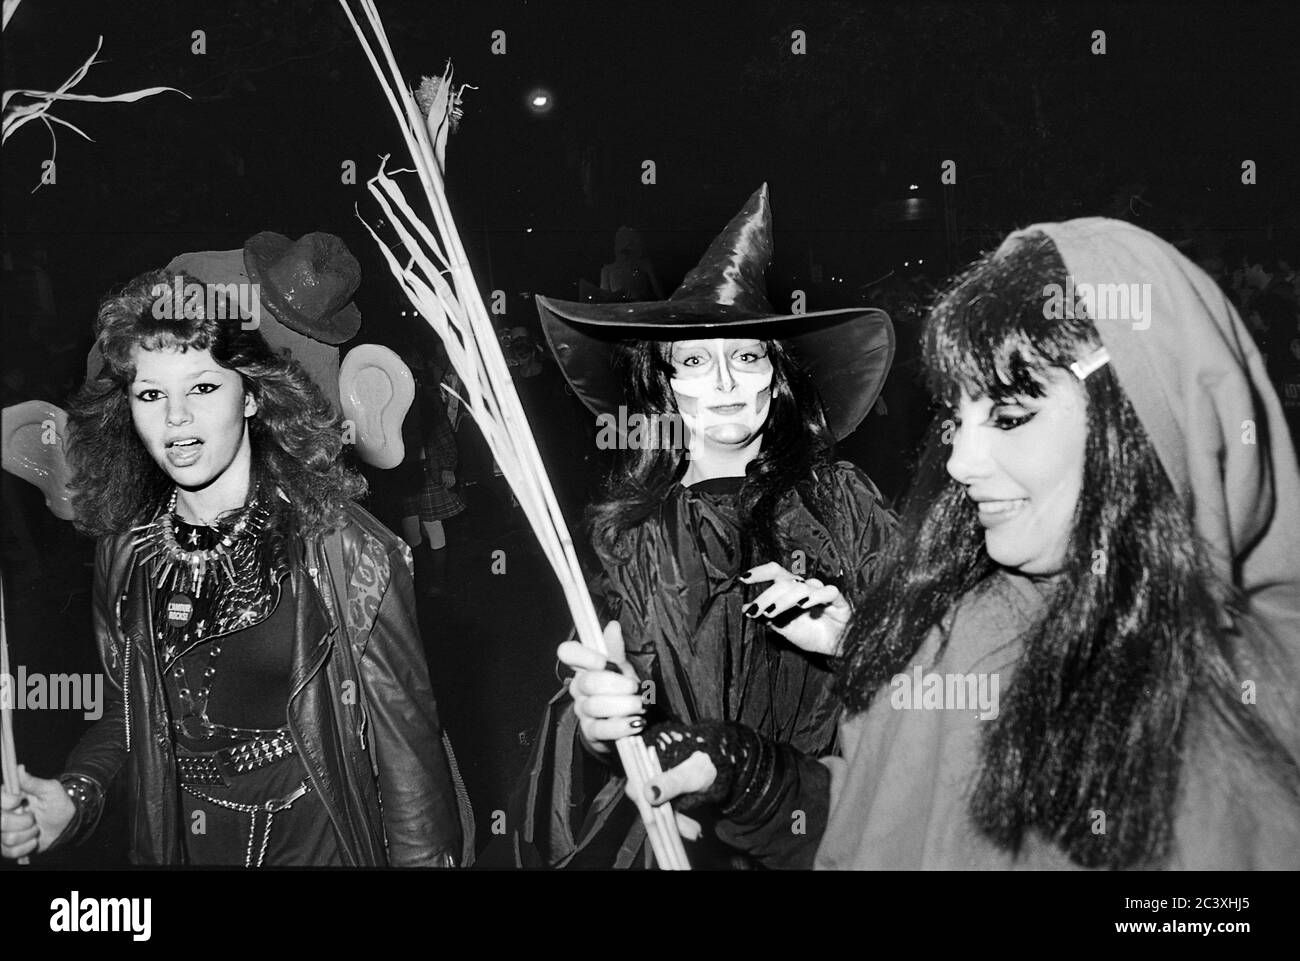 Donne partecipanti al Greenwich Village Halloween Parade, New York City, USA negli anni '80 fotografati con film in bianco e nero di notte. Foto Stock